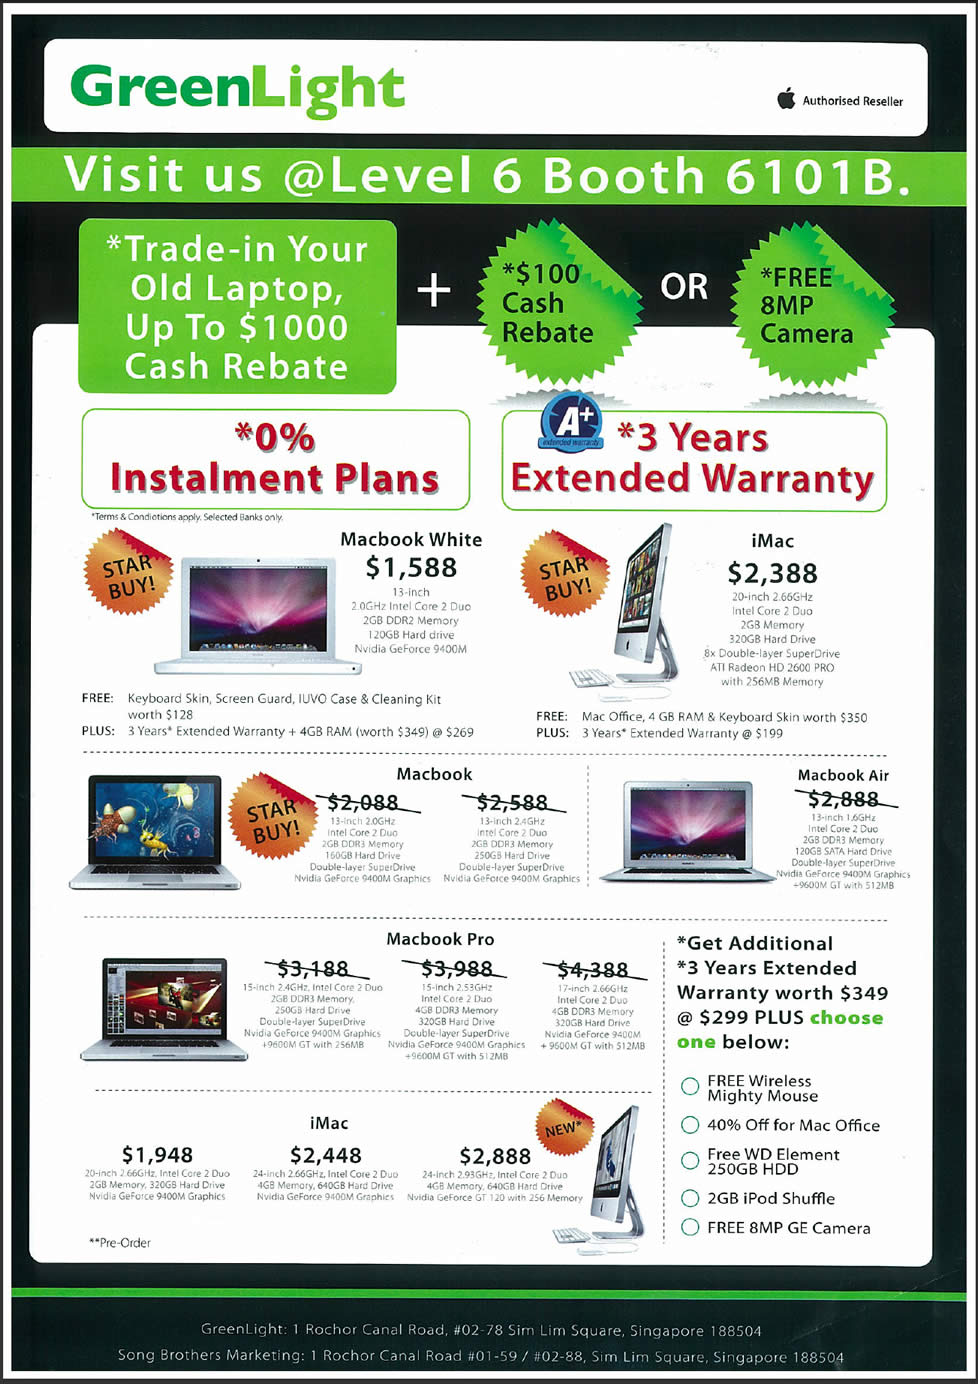 IT Show 2009 price list image brochure of Apple Macbook Macbook Pro IMac GreenLight (hwz)